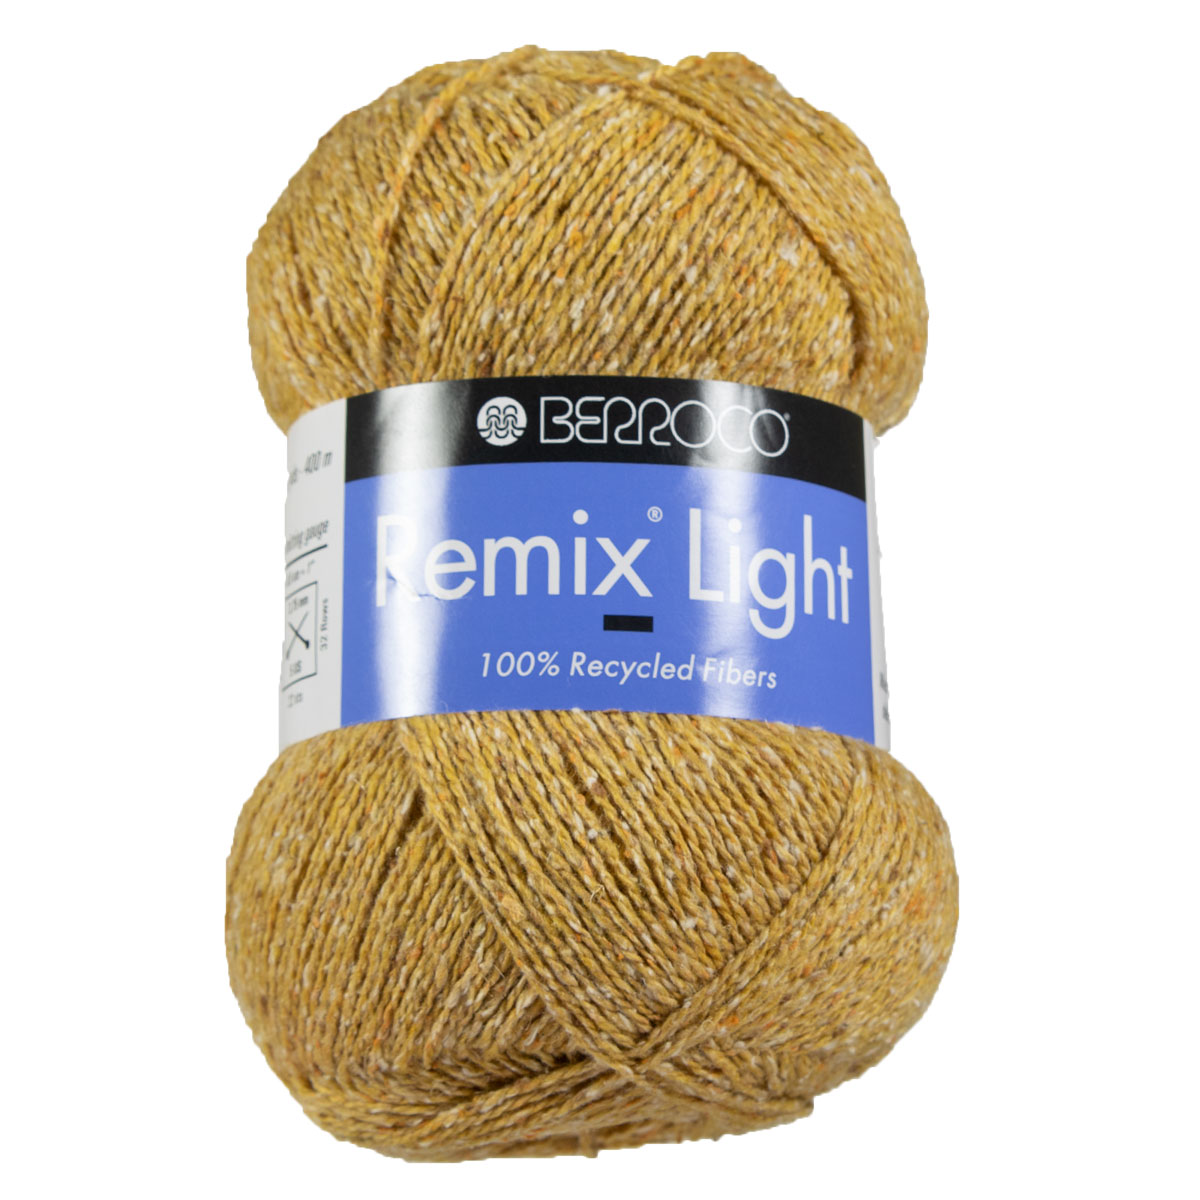 Berroco Remix Light Yarn - 6922 Buttercup at Jimmy Beans Wool